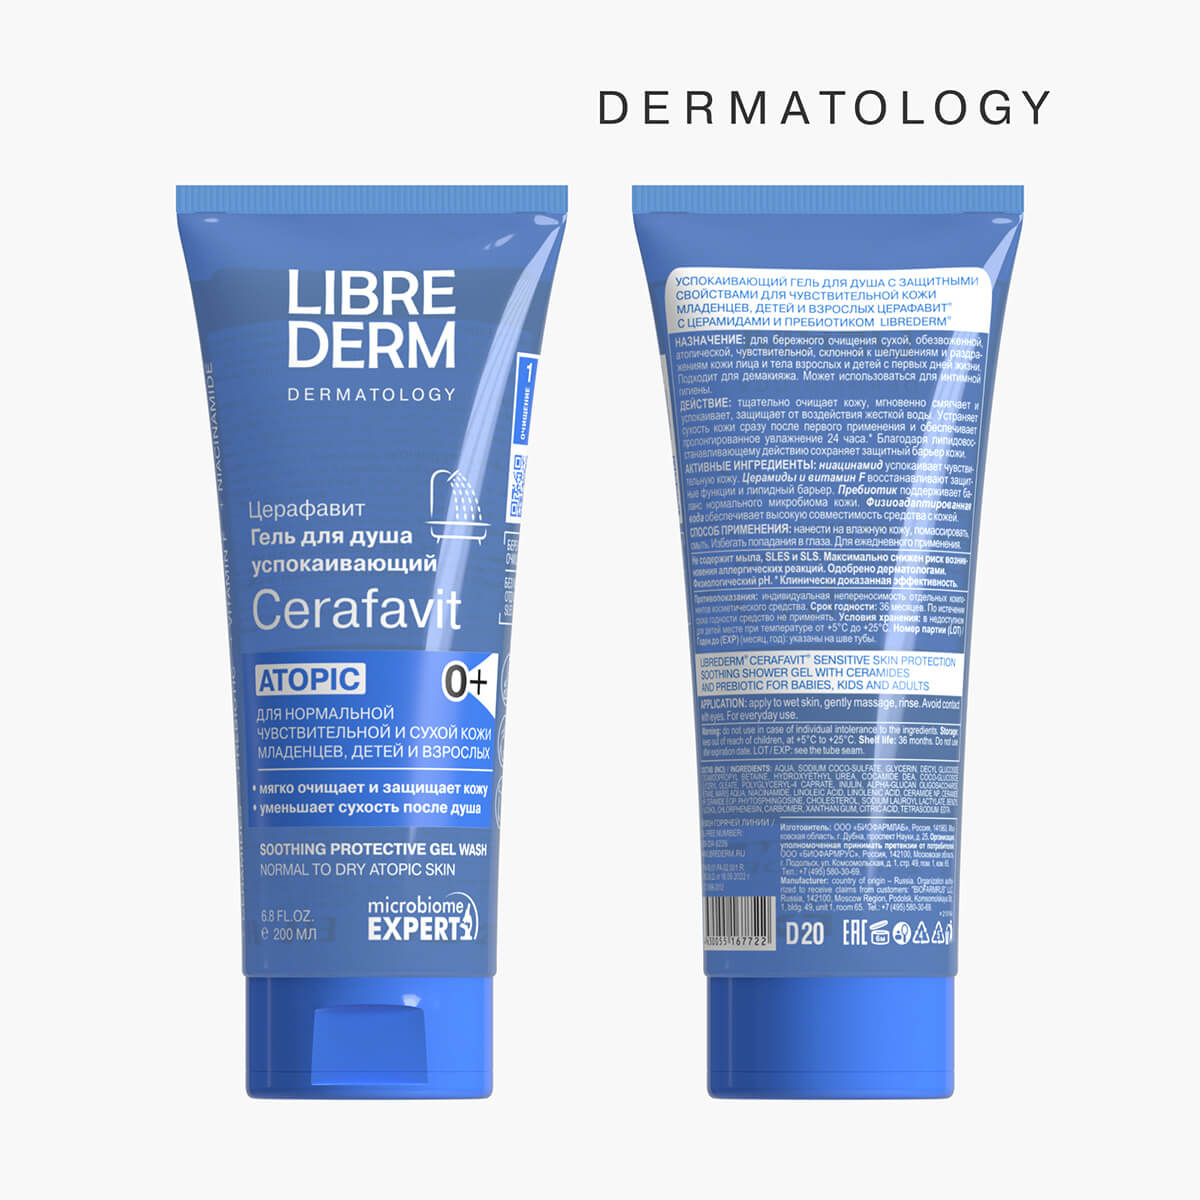 CERAFAVIT успокаивающий гель для душа с защитными свойствами для чувствительной кожи 200мл, LIBREDERM